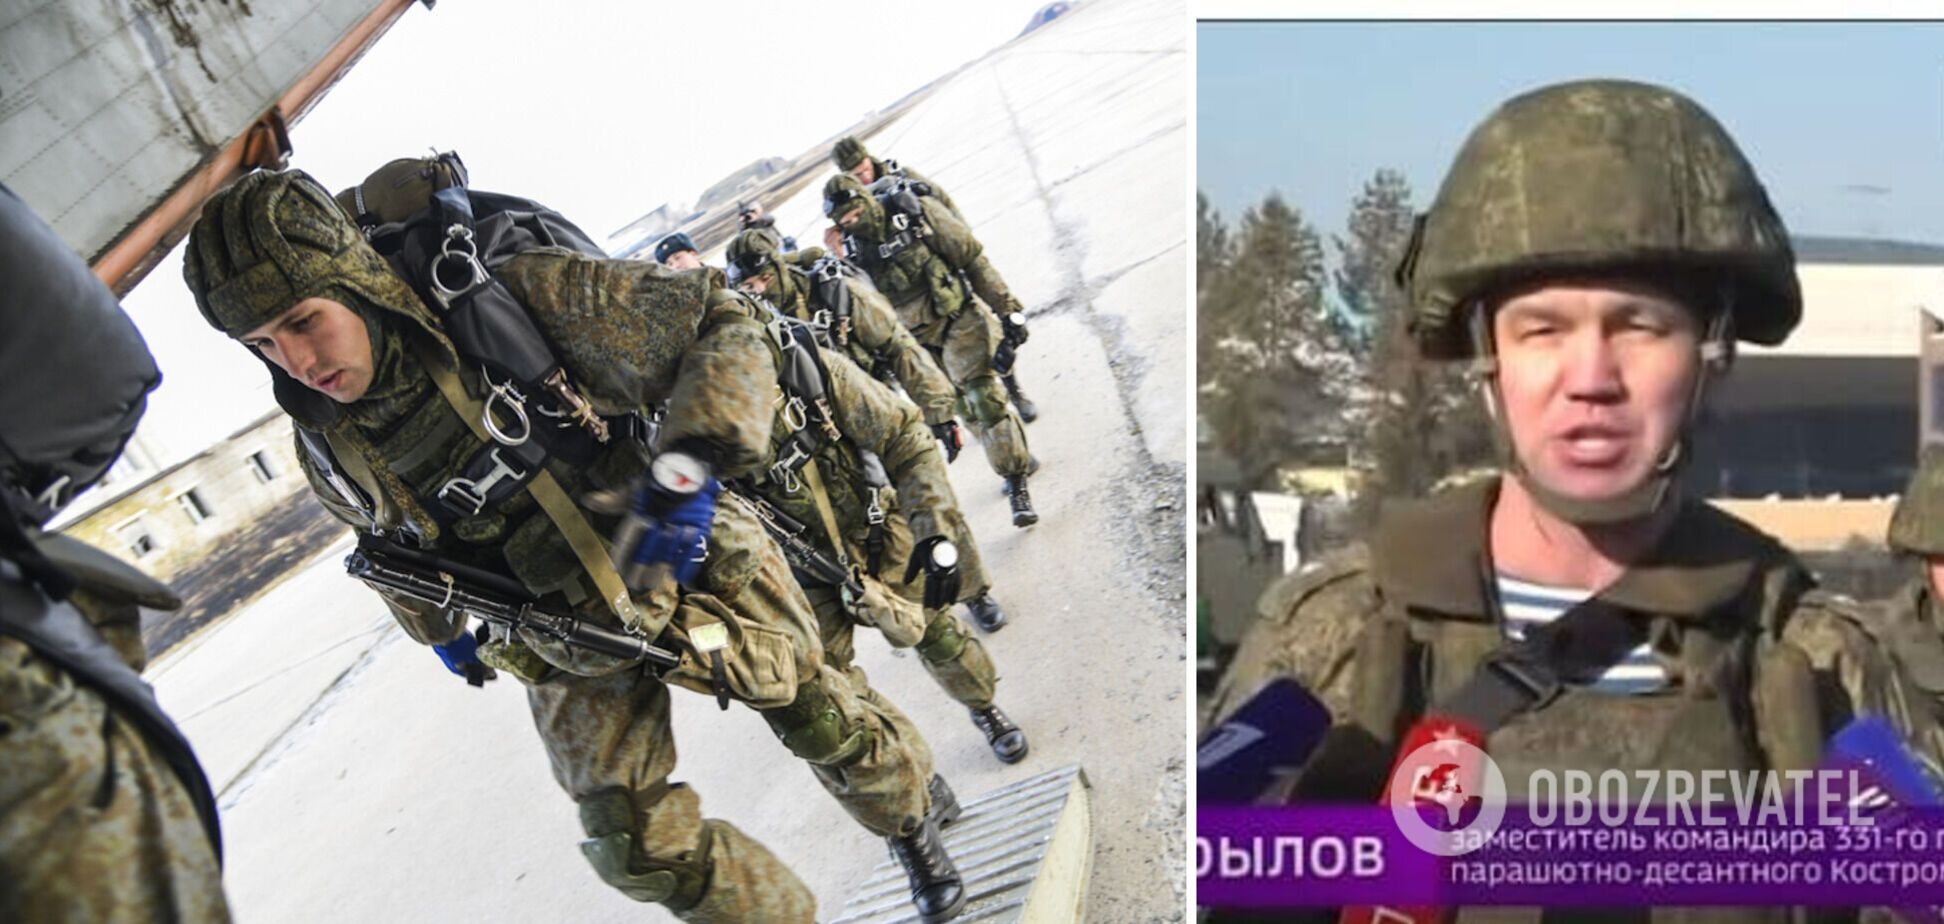 В Украине ликвидировали замкомандира 331-го костромского полка ВДВ. Фото